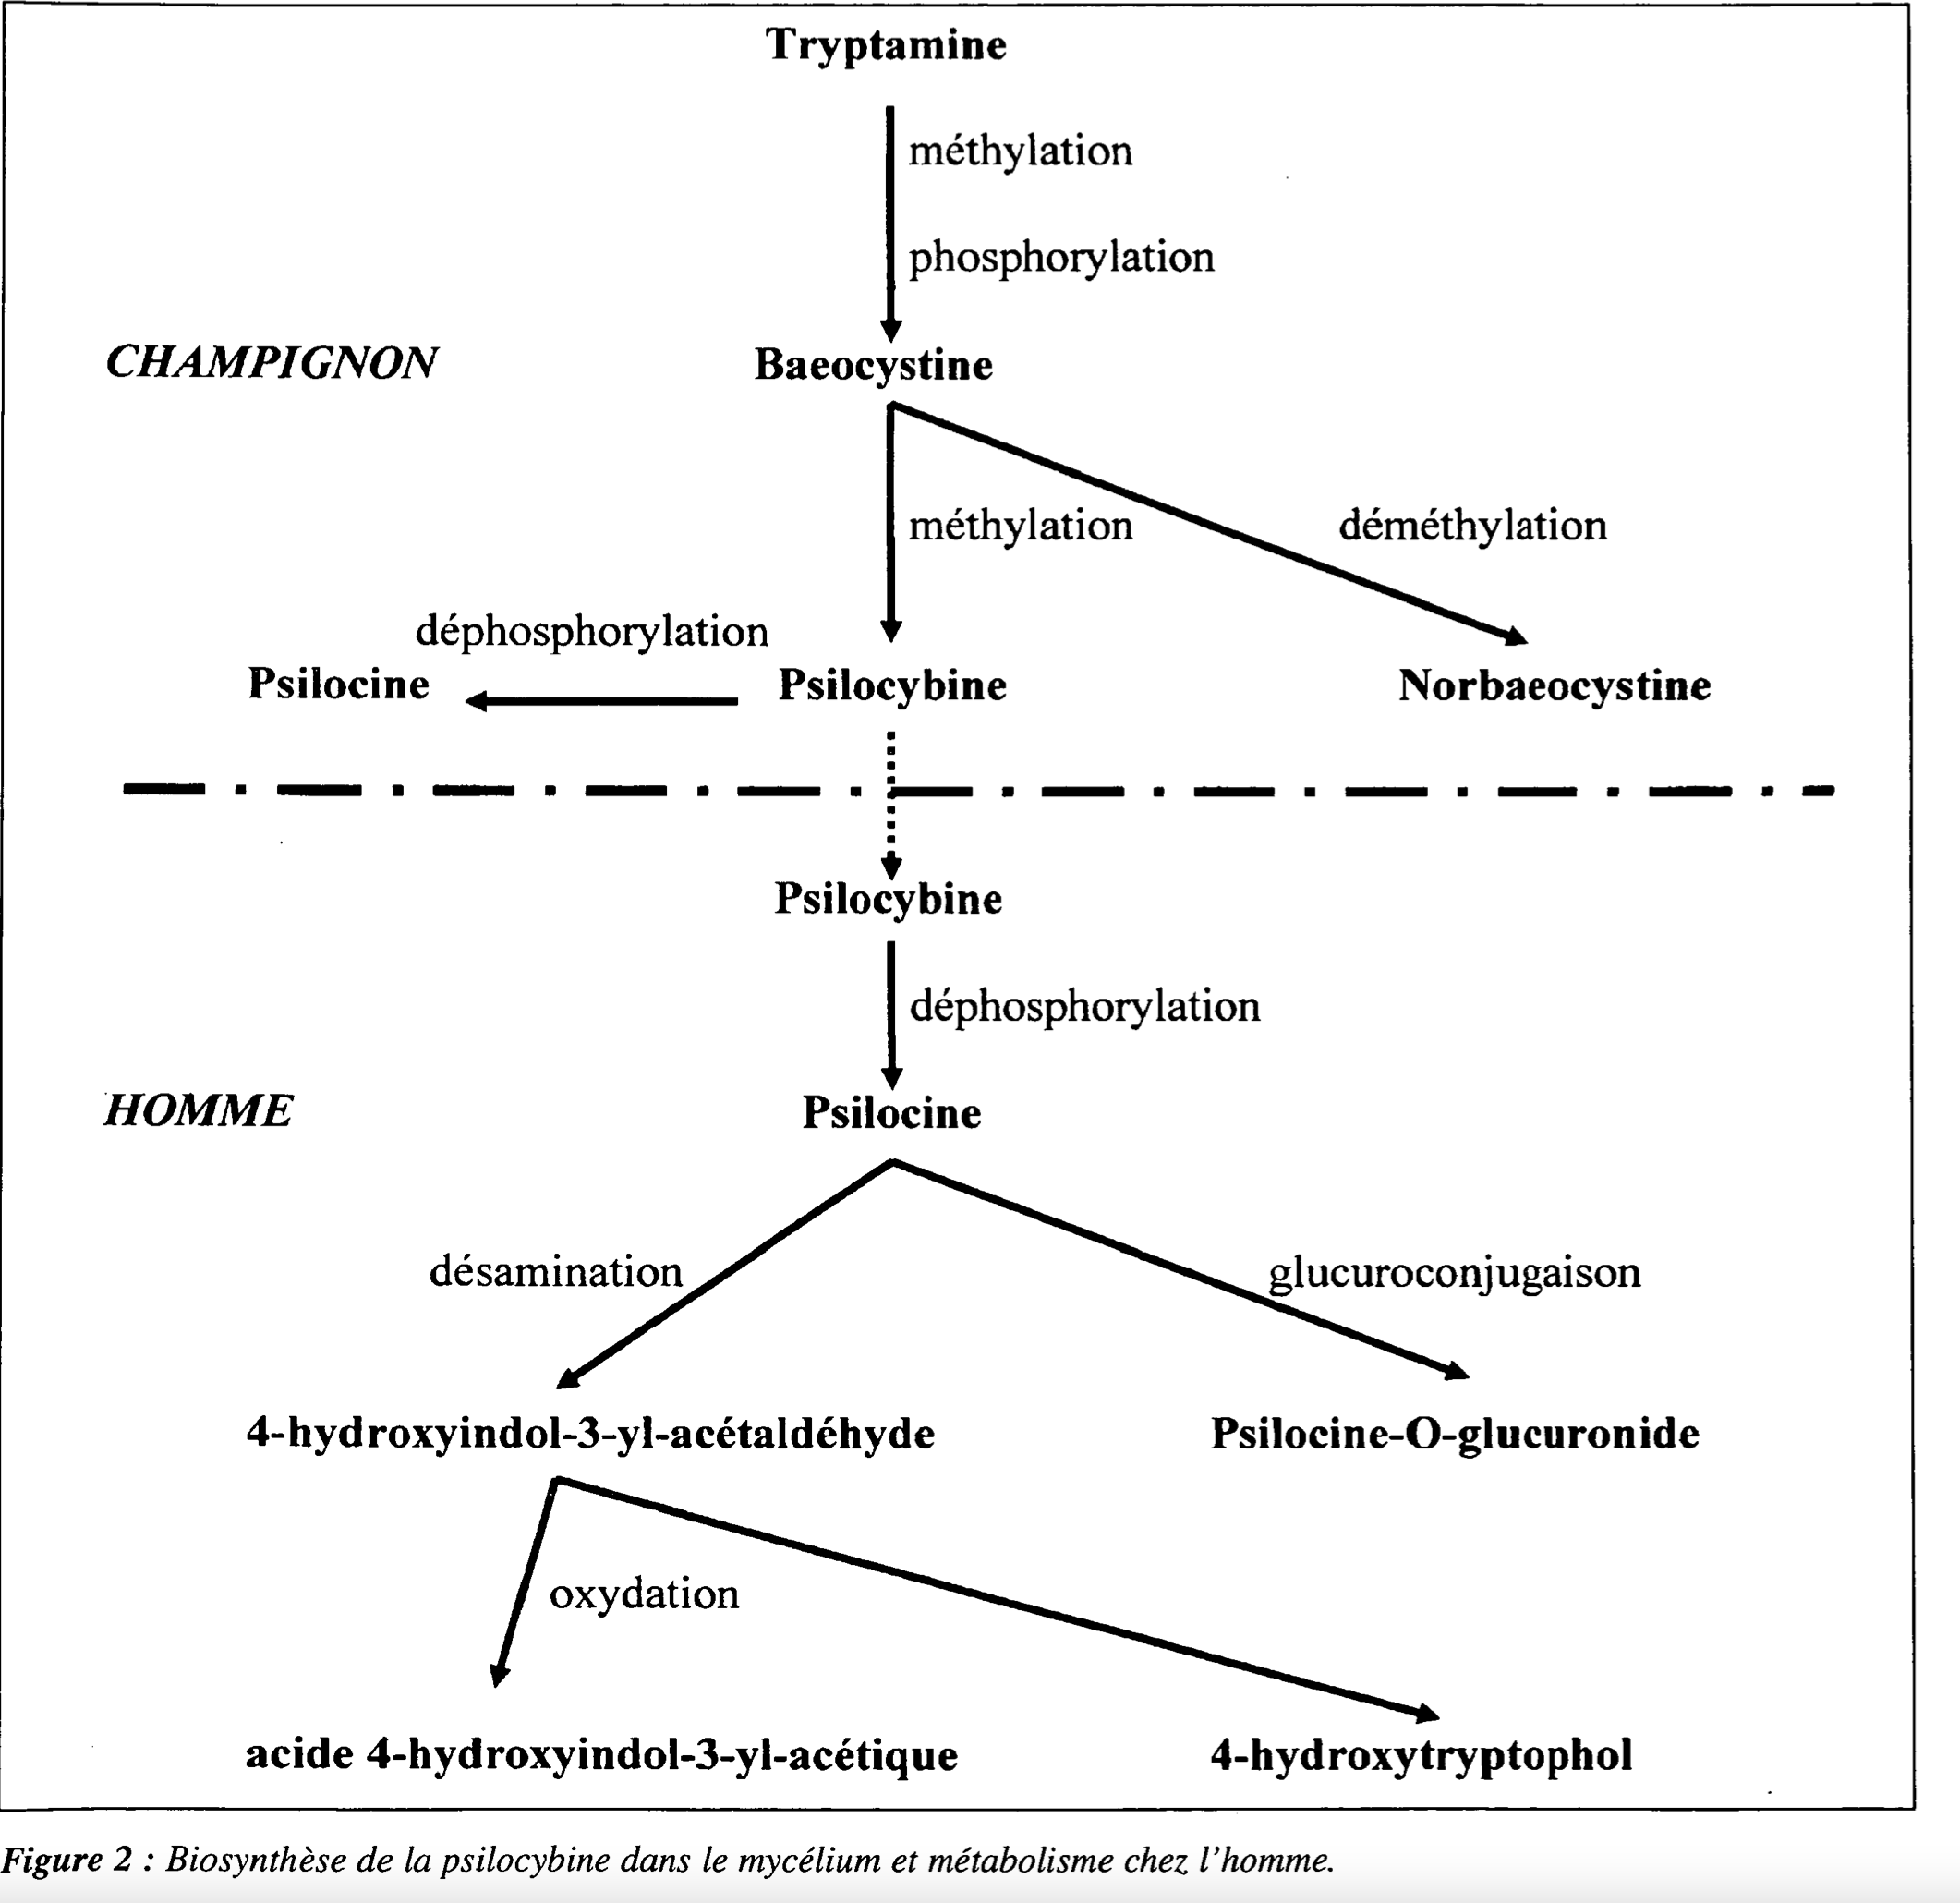 Biosíntesis de psilocibina en micelio y metabolismo en humanos (transformación a psilocina). Ilustración de Annales de Toxicologie Analytique, Vol XVI no. 1, p 39